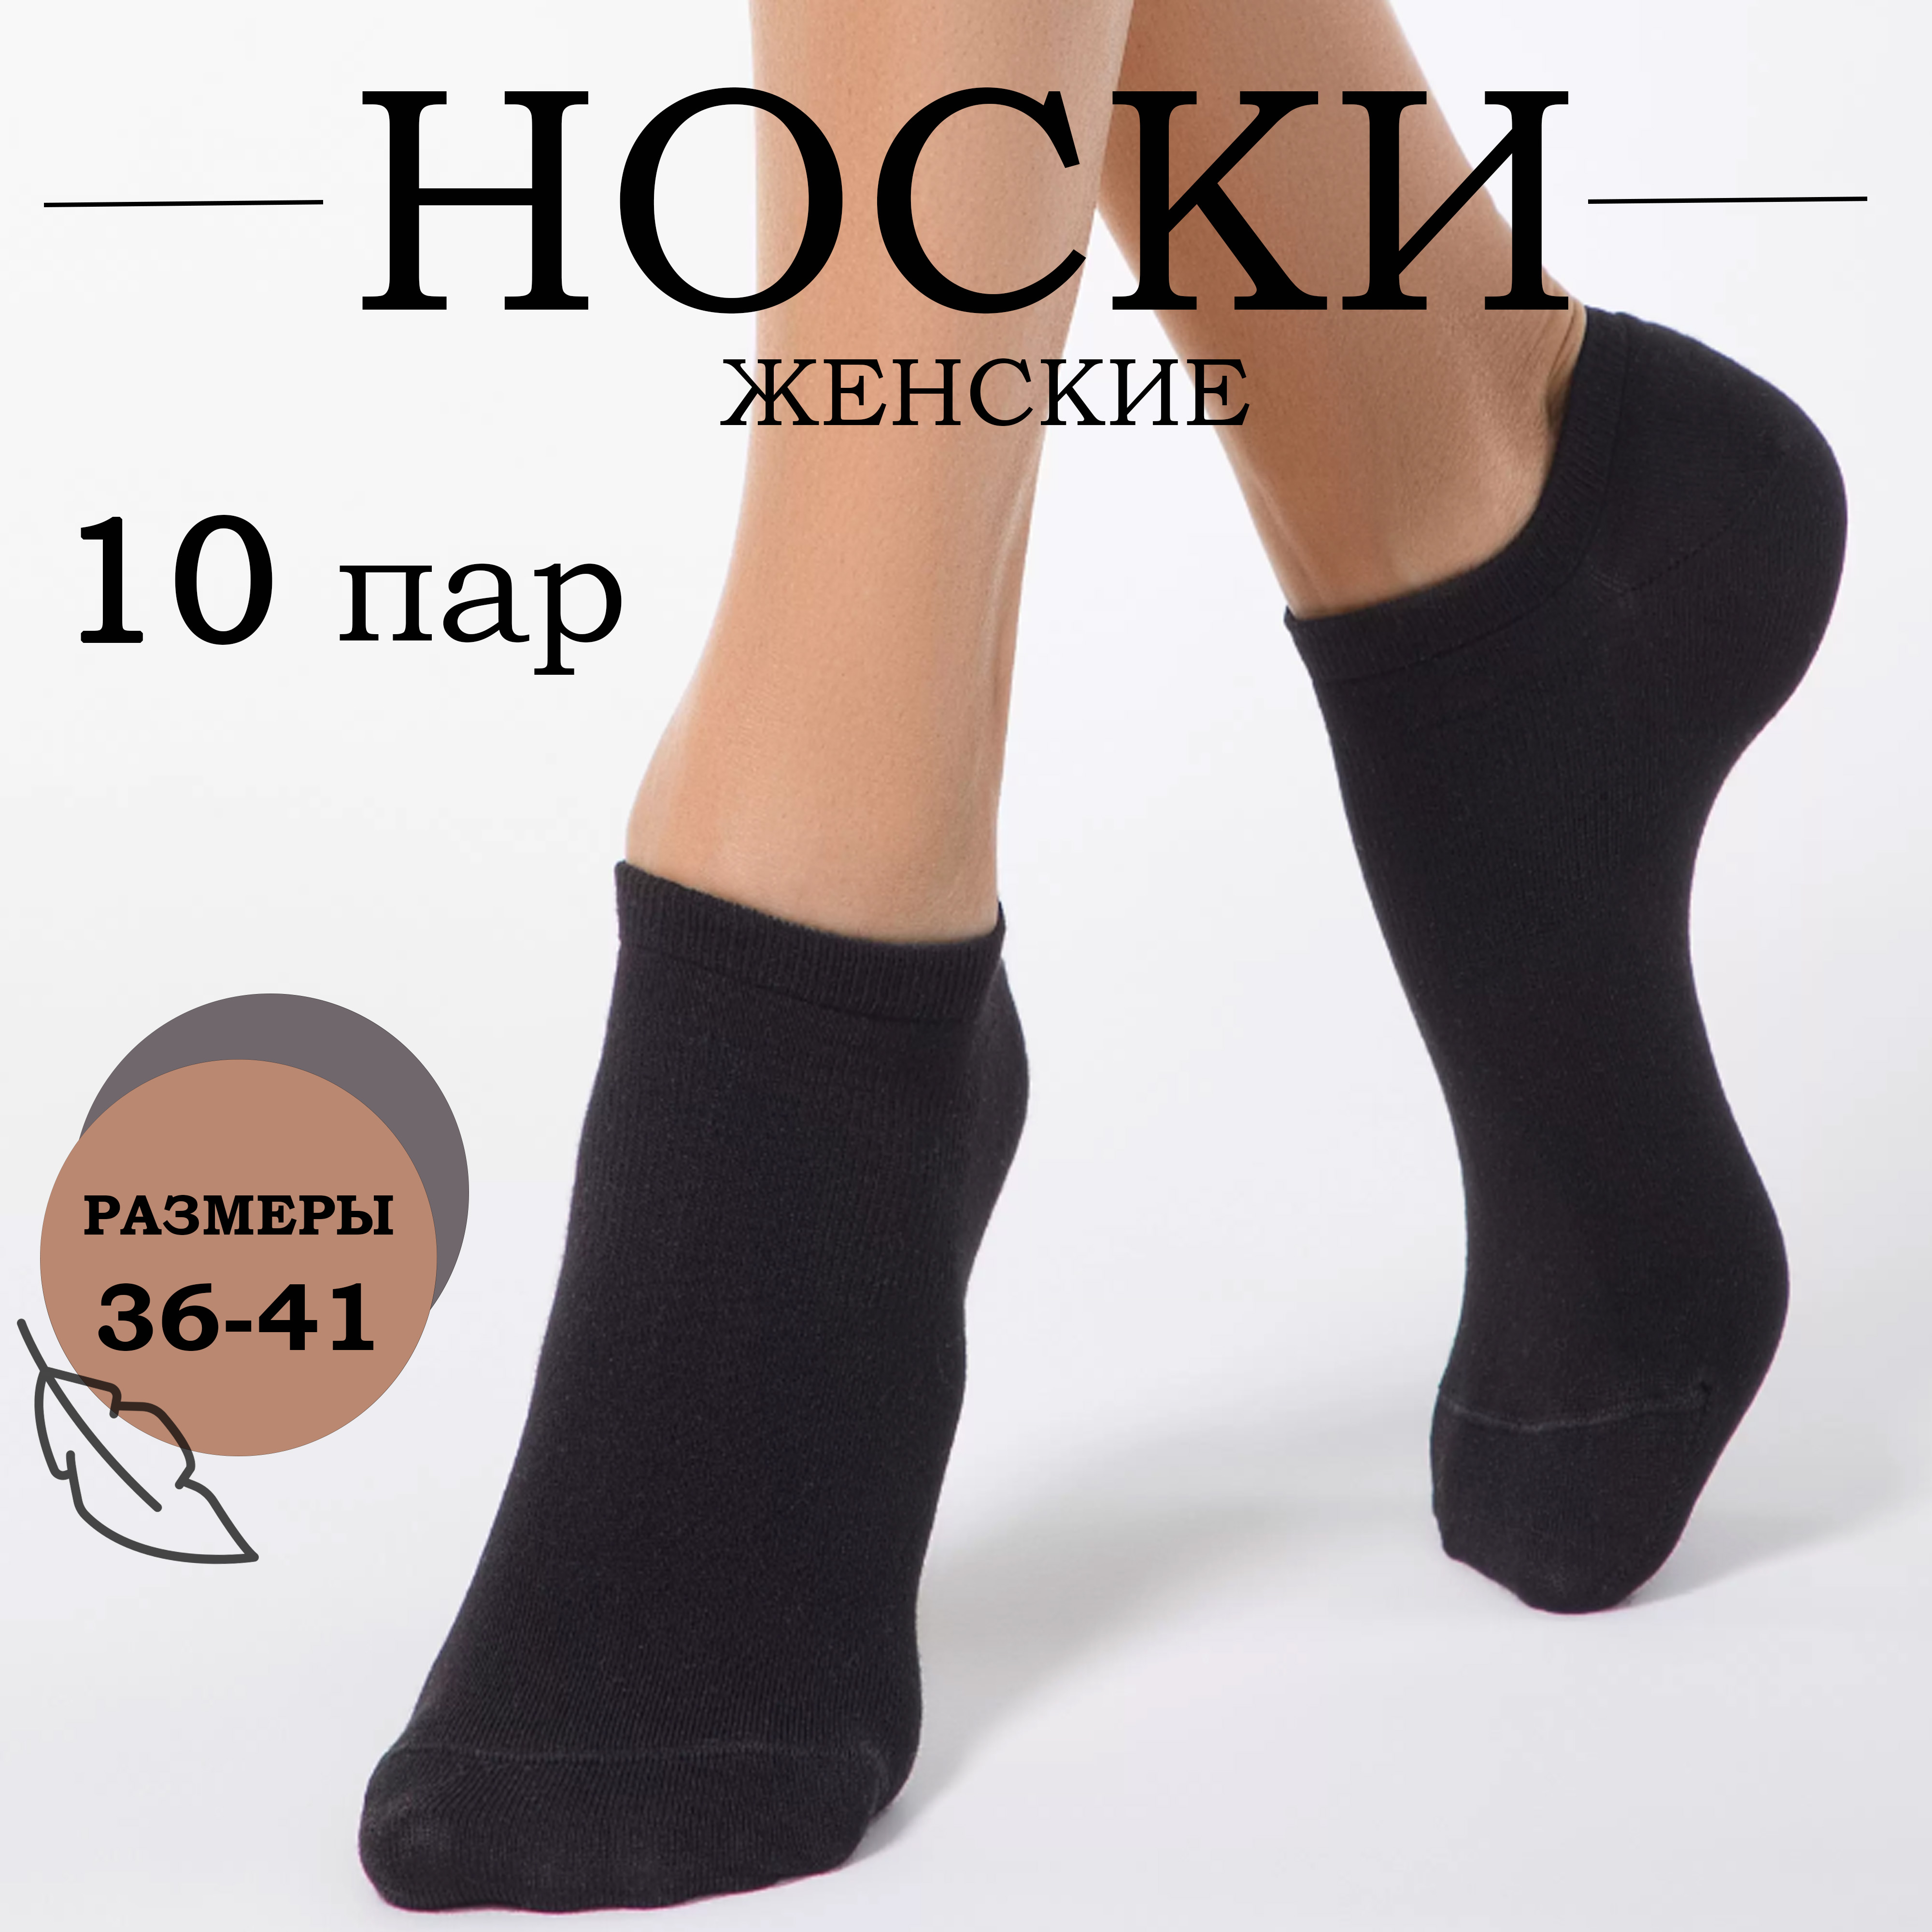 Комплект носков женских Ланмень Классика черных 36-41 10 пар